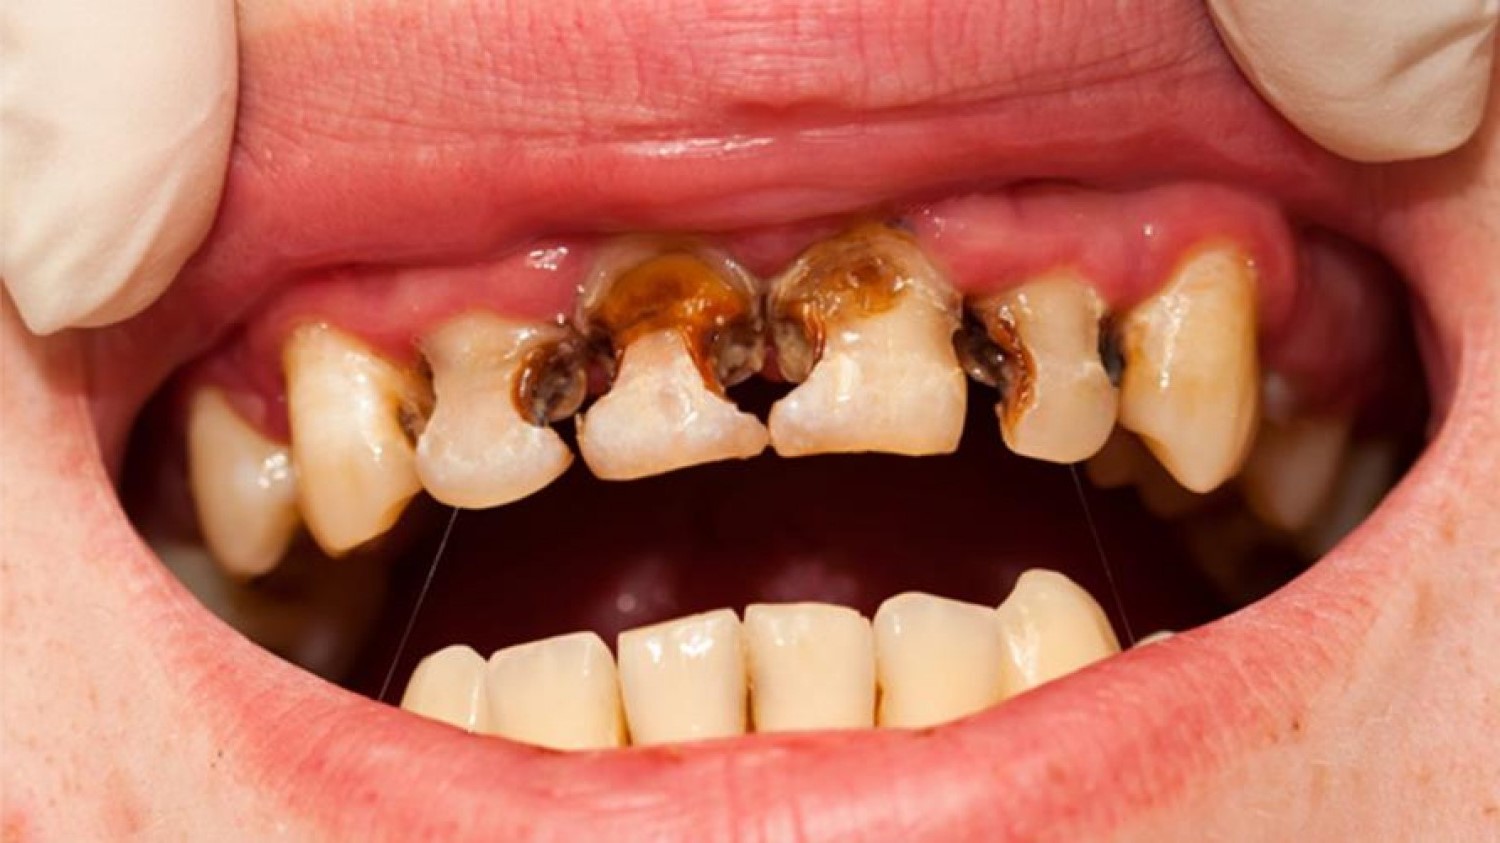 مقال – المشروبات الغازية تؤدي إلى تآكل الأسنان